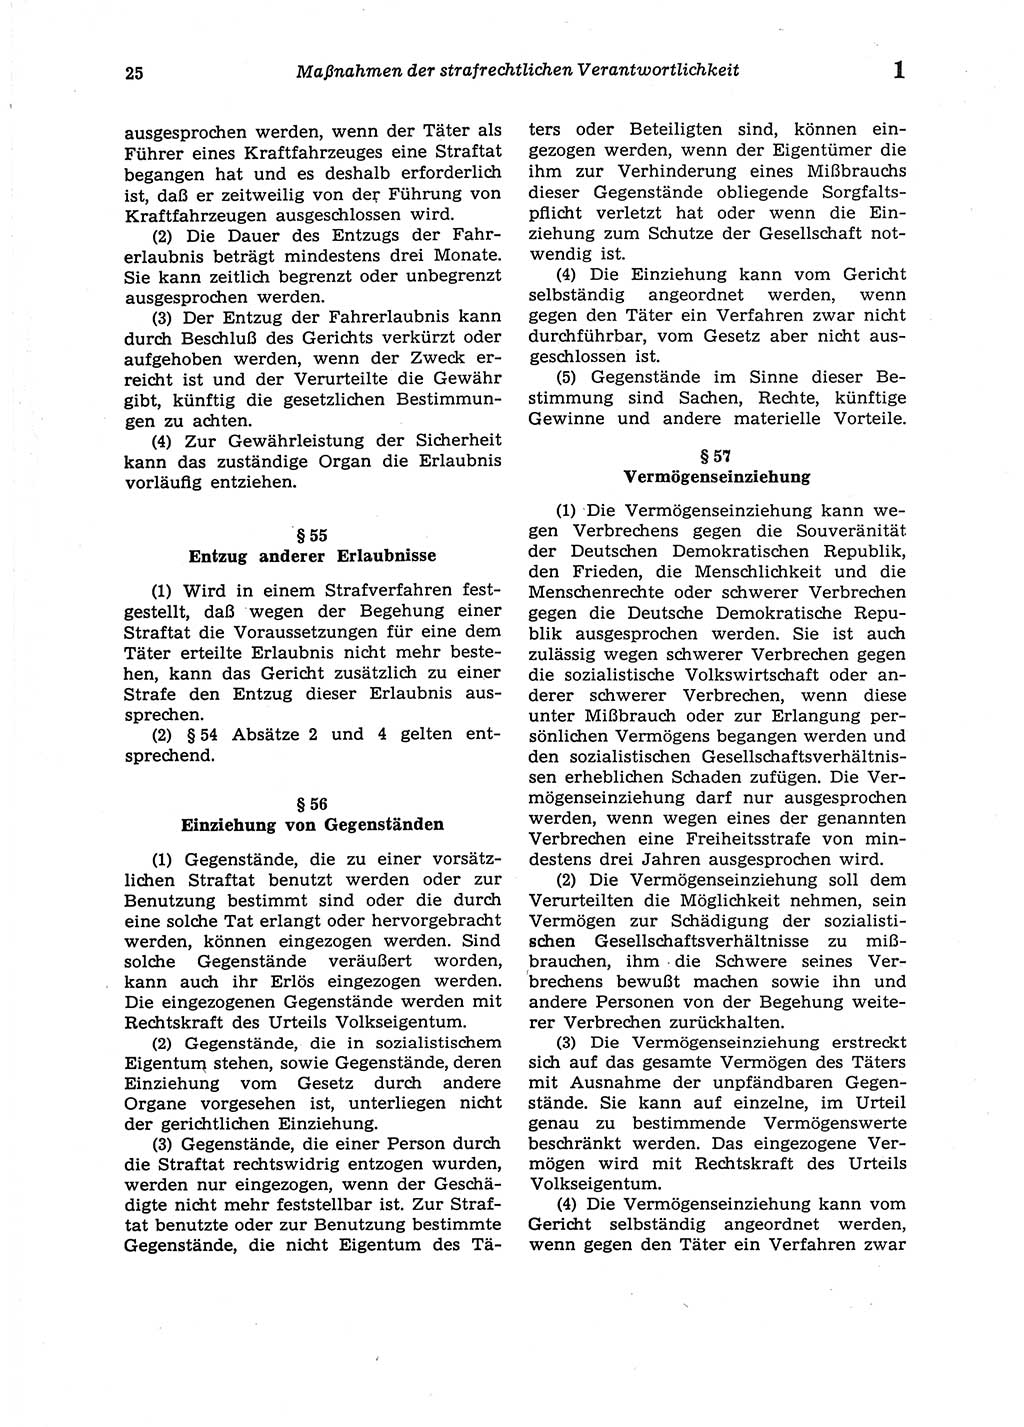 Strafgesetzbuch (StGB) der Deutschen Demokratischen Republik (DDR) 1987, Seite 25 (StGB DDR 1987, S. 25)